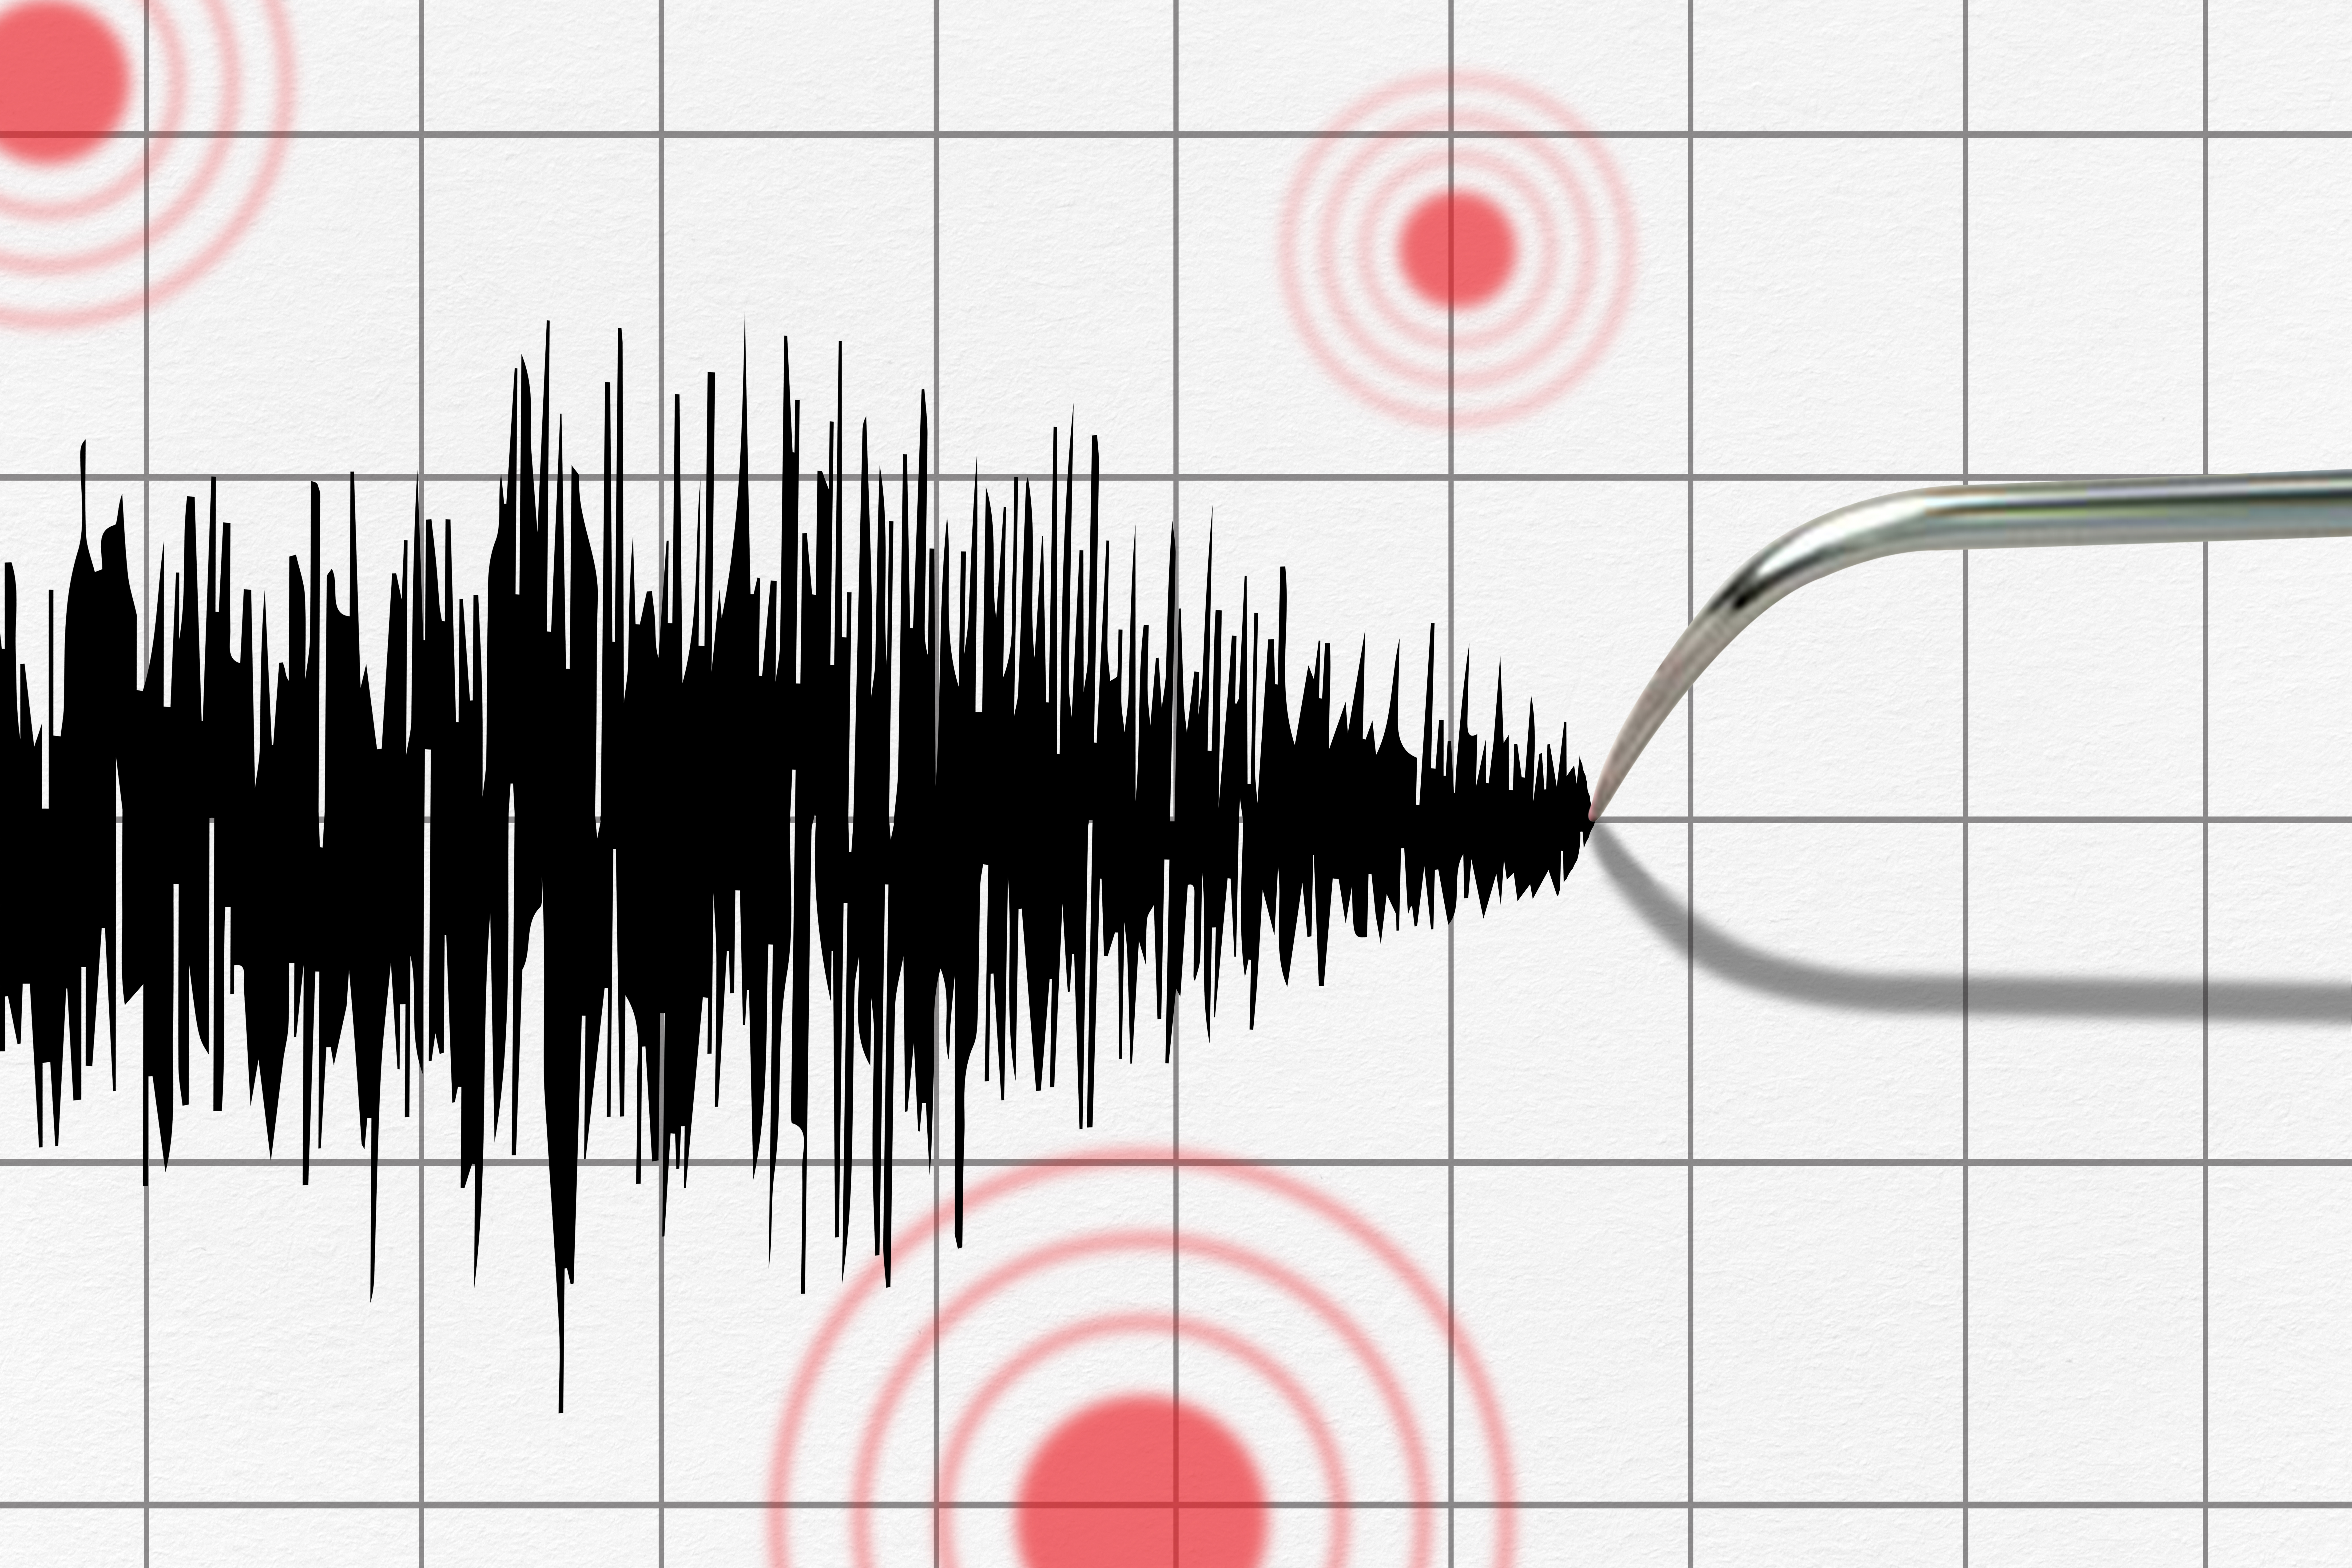 Zatreslo se u okolini: Zemljotres jačine 3,8 Rihterove skale pogodio Srbiju